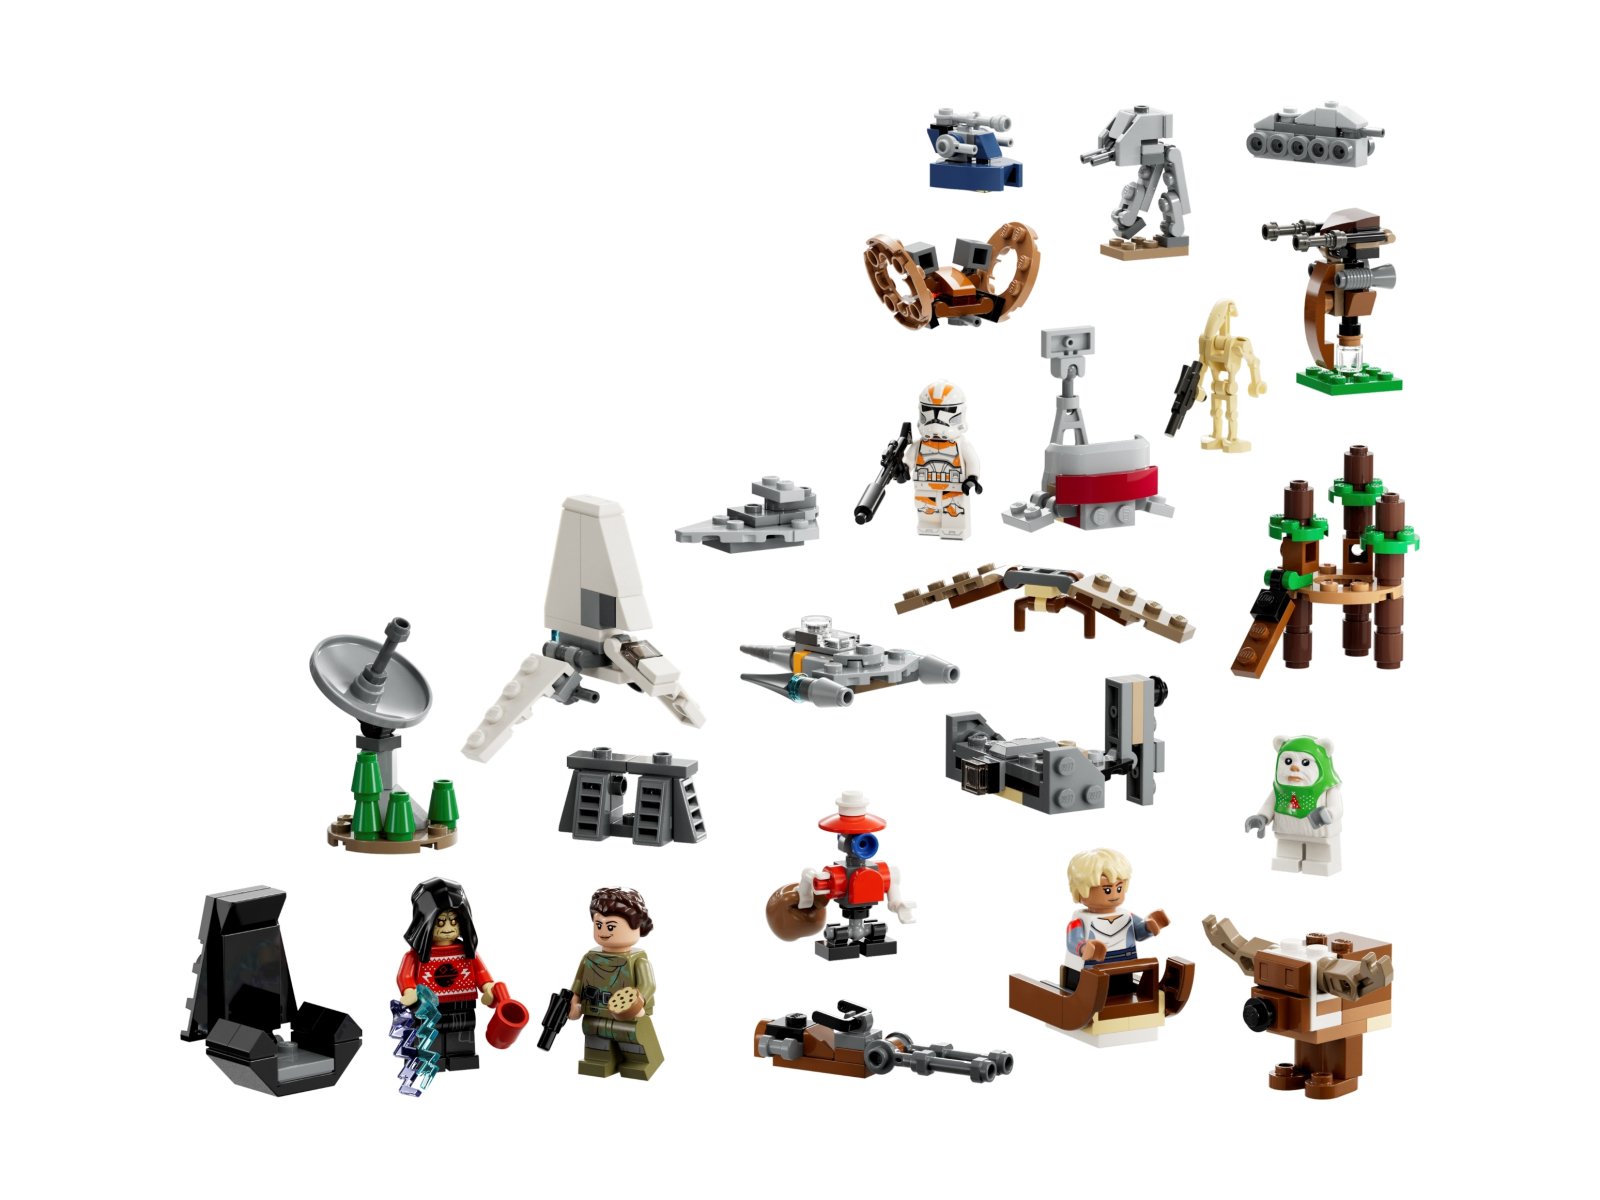 LEGO 75366 Star Wars Kalendarz adwentowy LEGO® Star Wars™